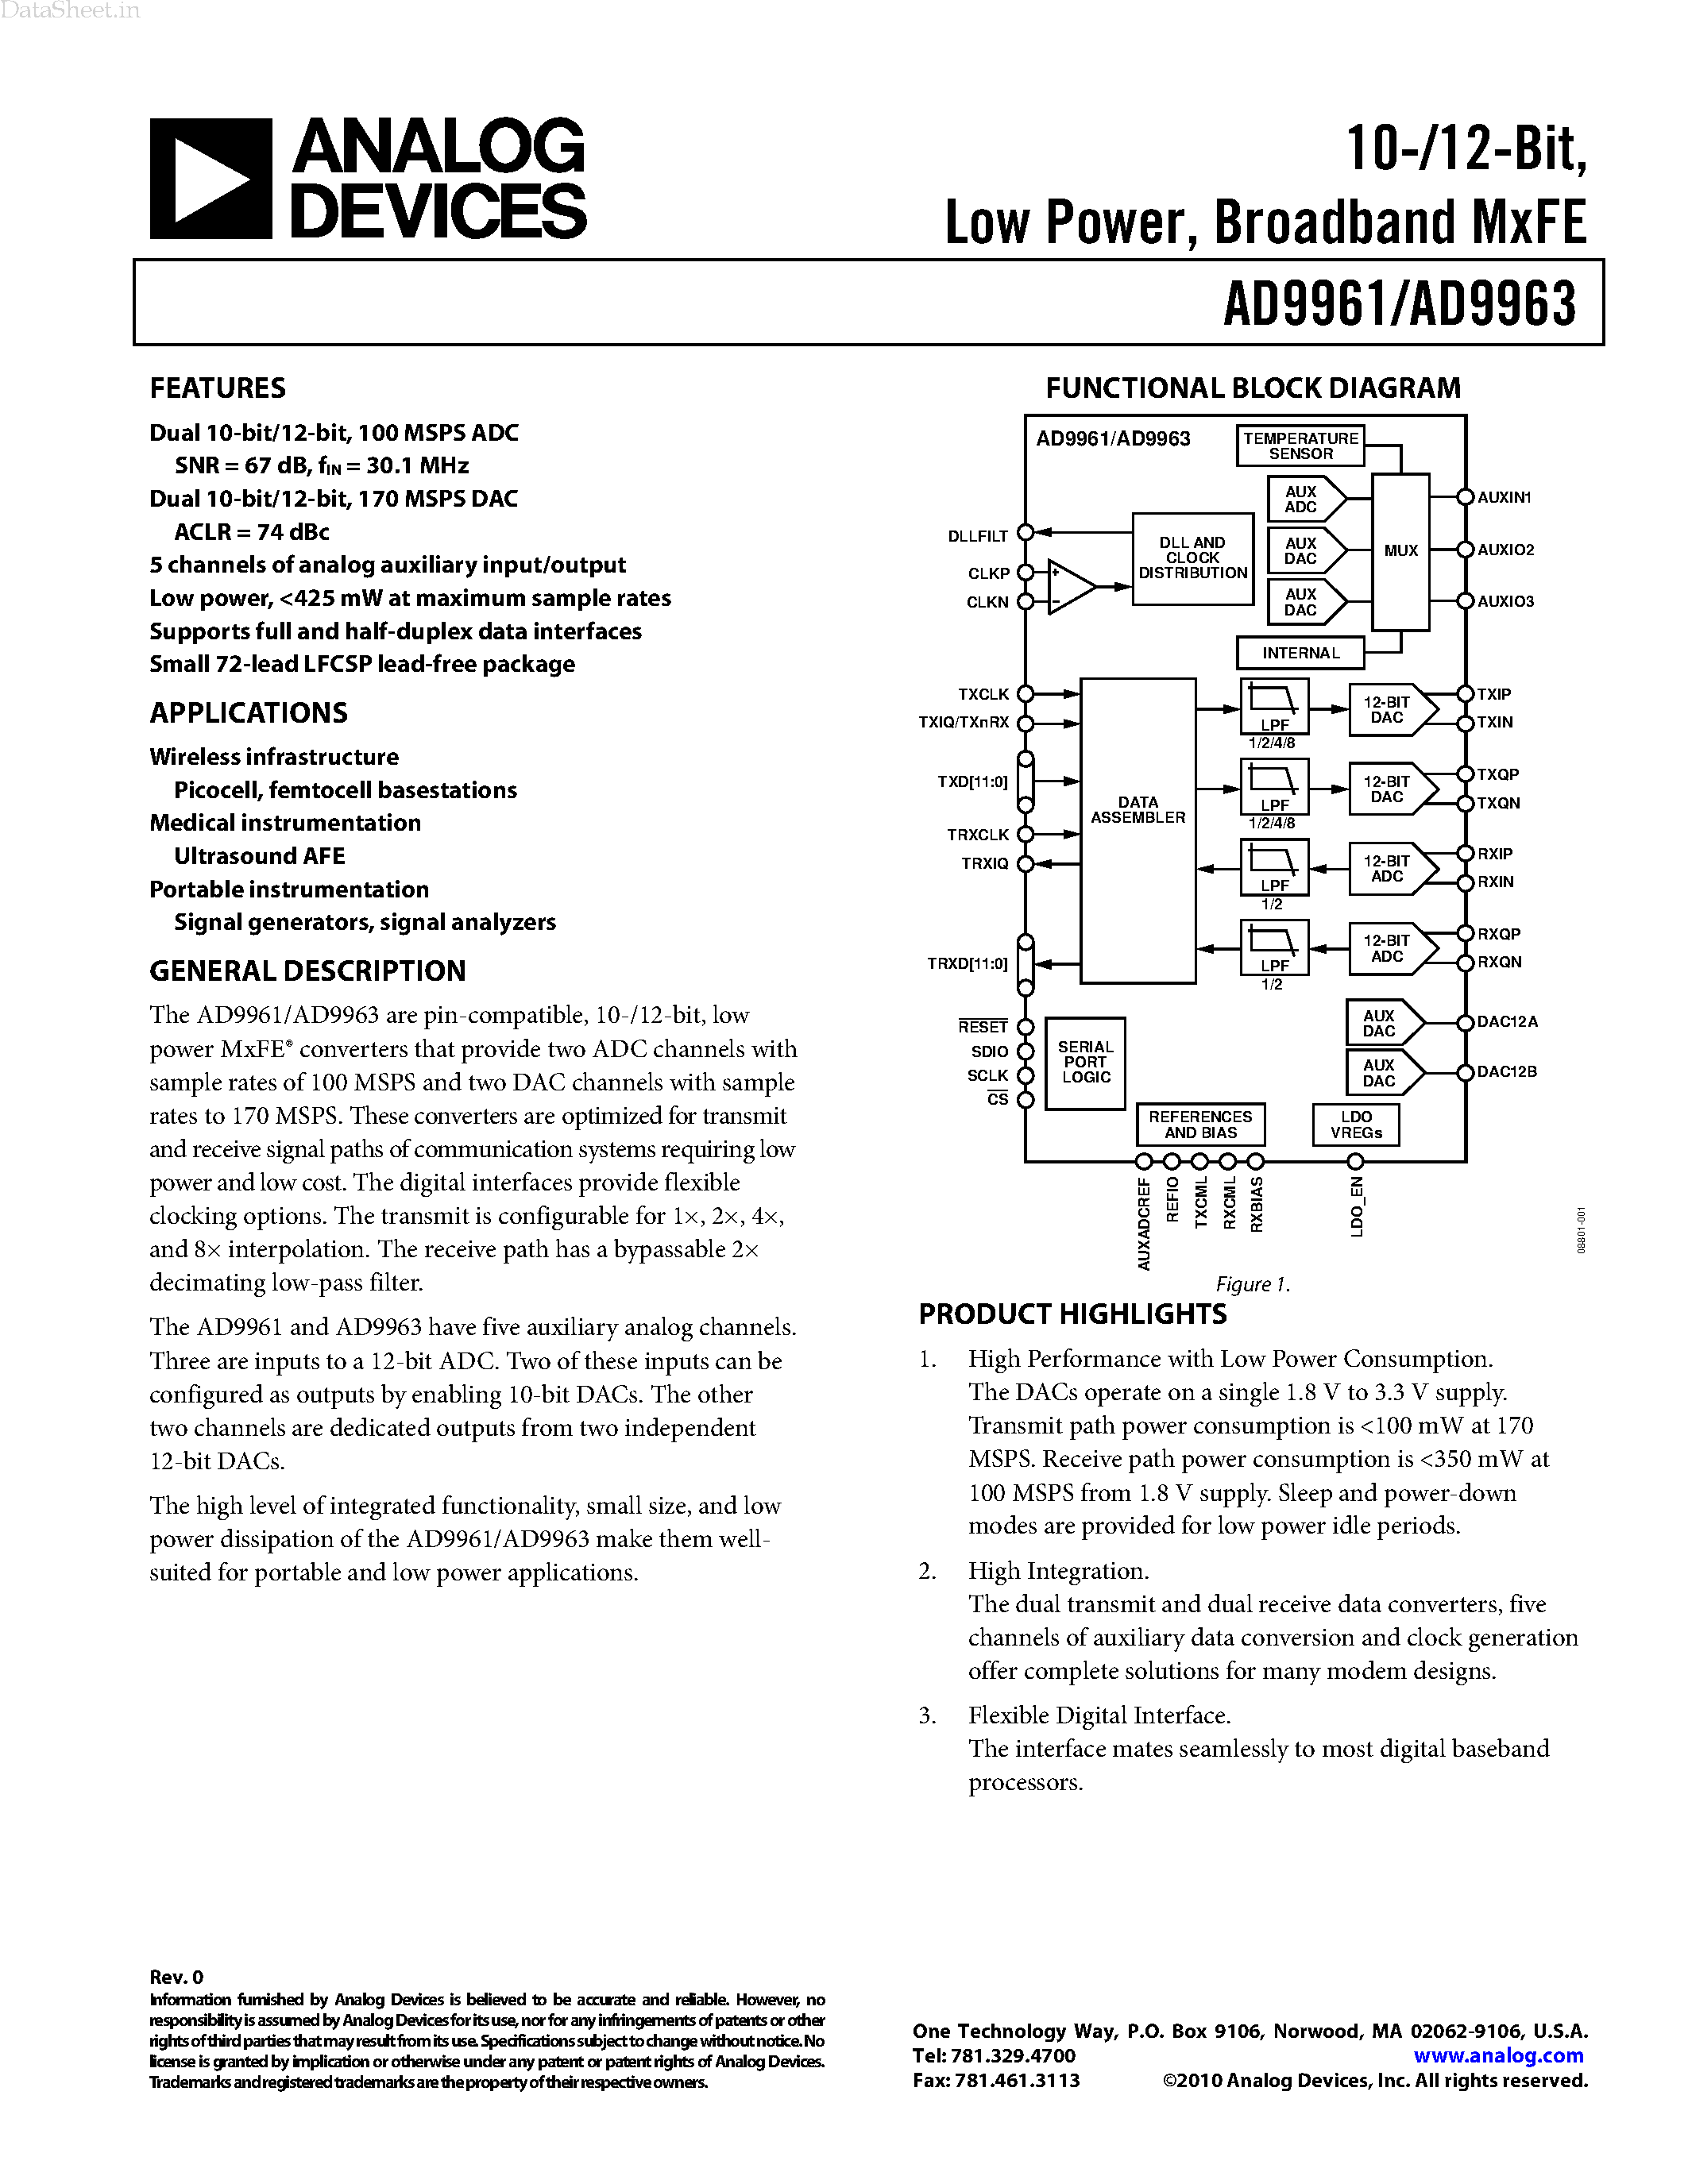 Даташит AD9961 - (AD9961 / AD9963) Broadband MxFE страница 1